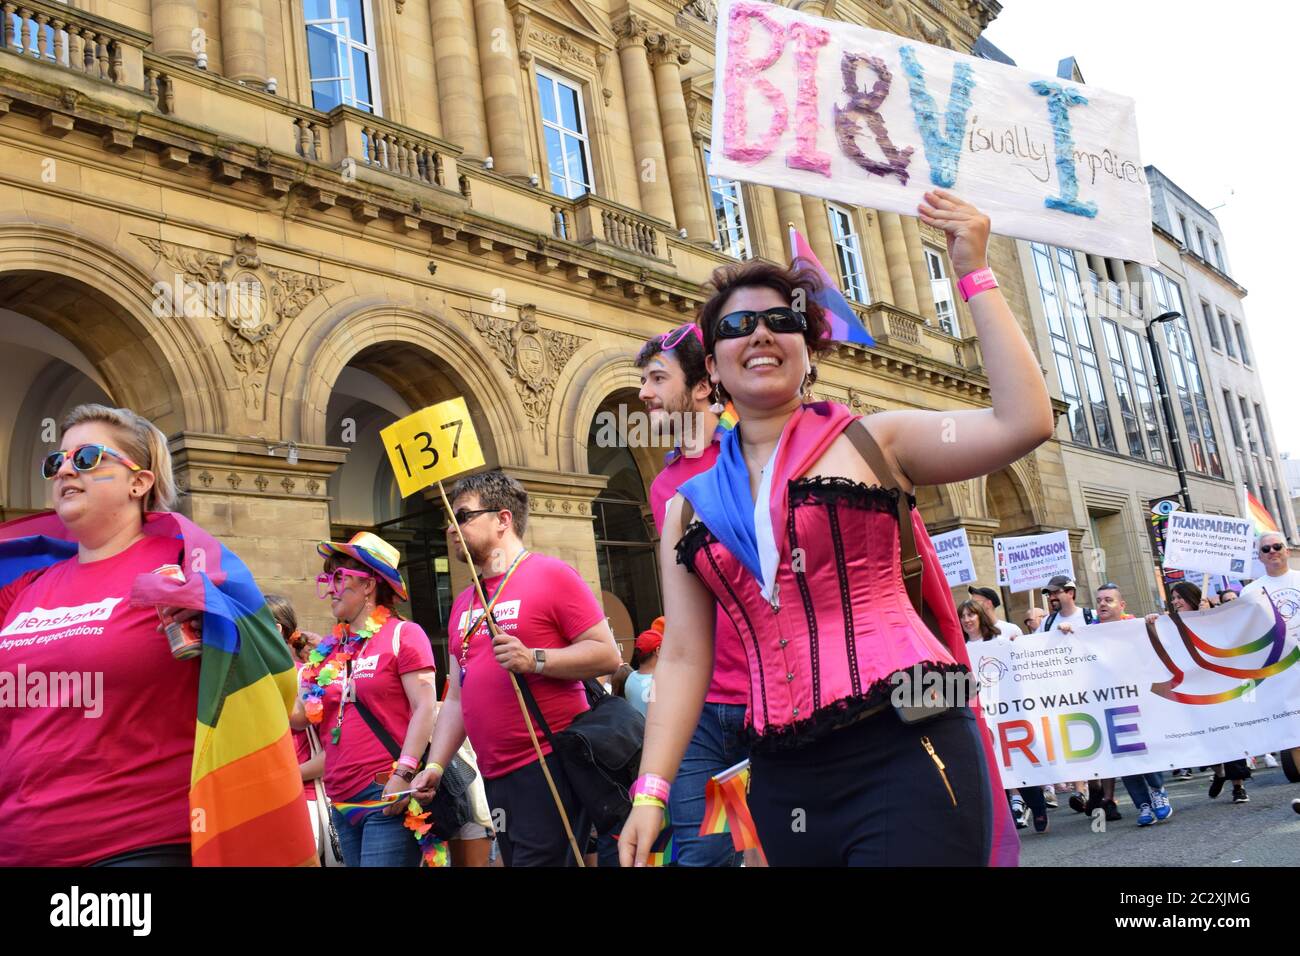 Défilé de fierté Manchester passant devant l'hôtel Radisson sur Peter Street une femme malvoyante en basque rose en procession tenant le signe BI&VI Banque D'Images